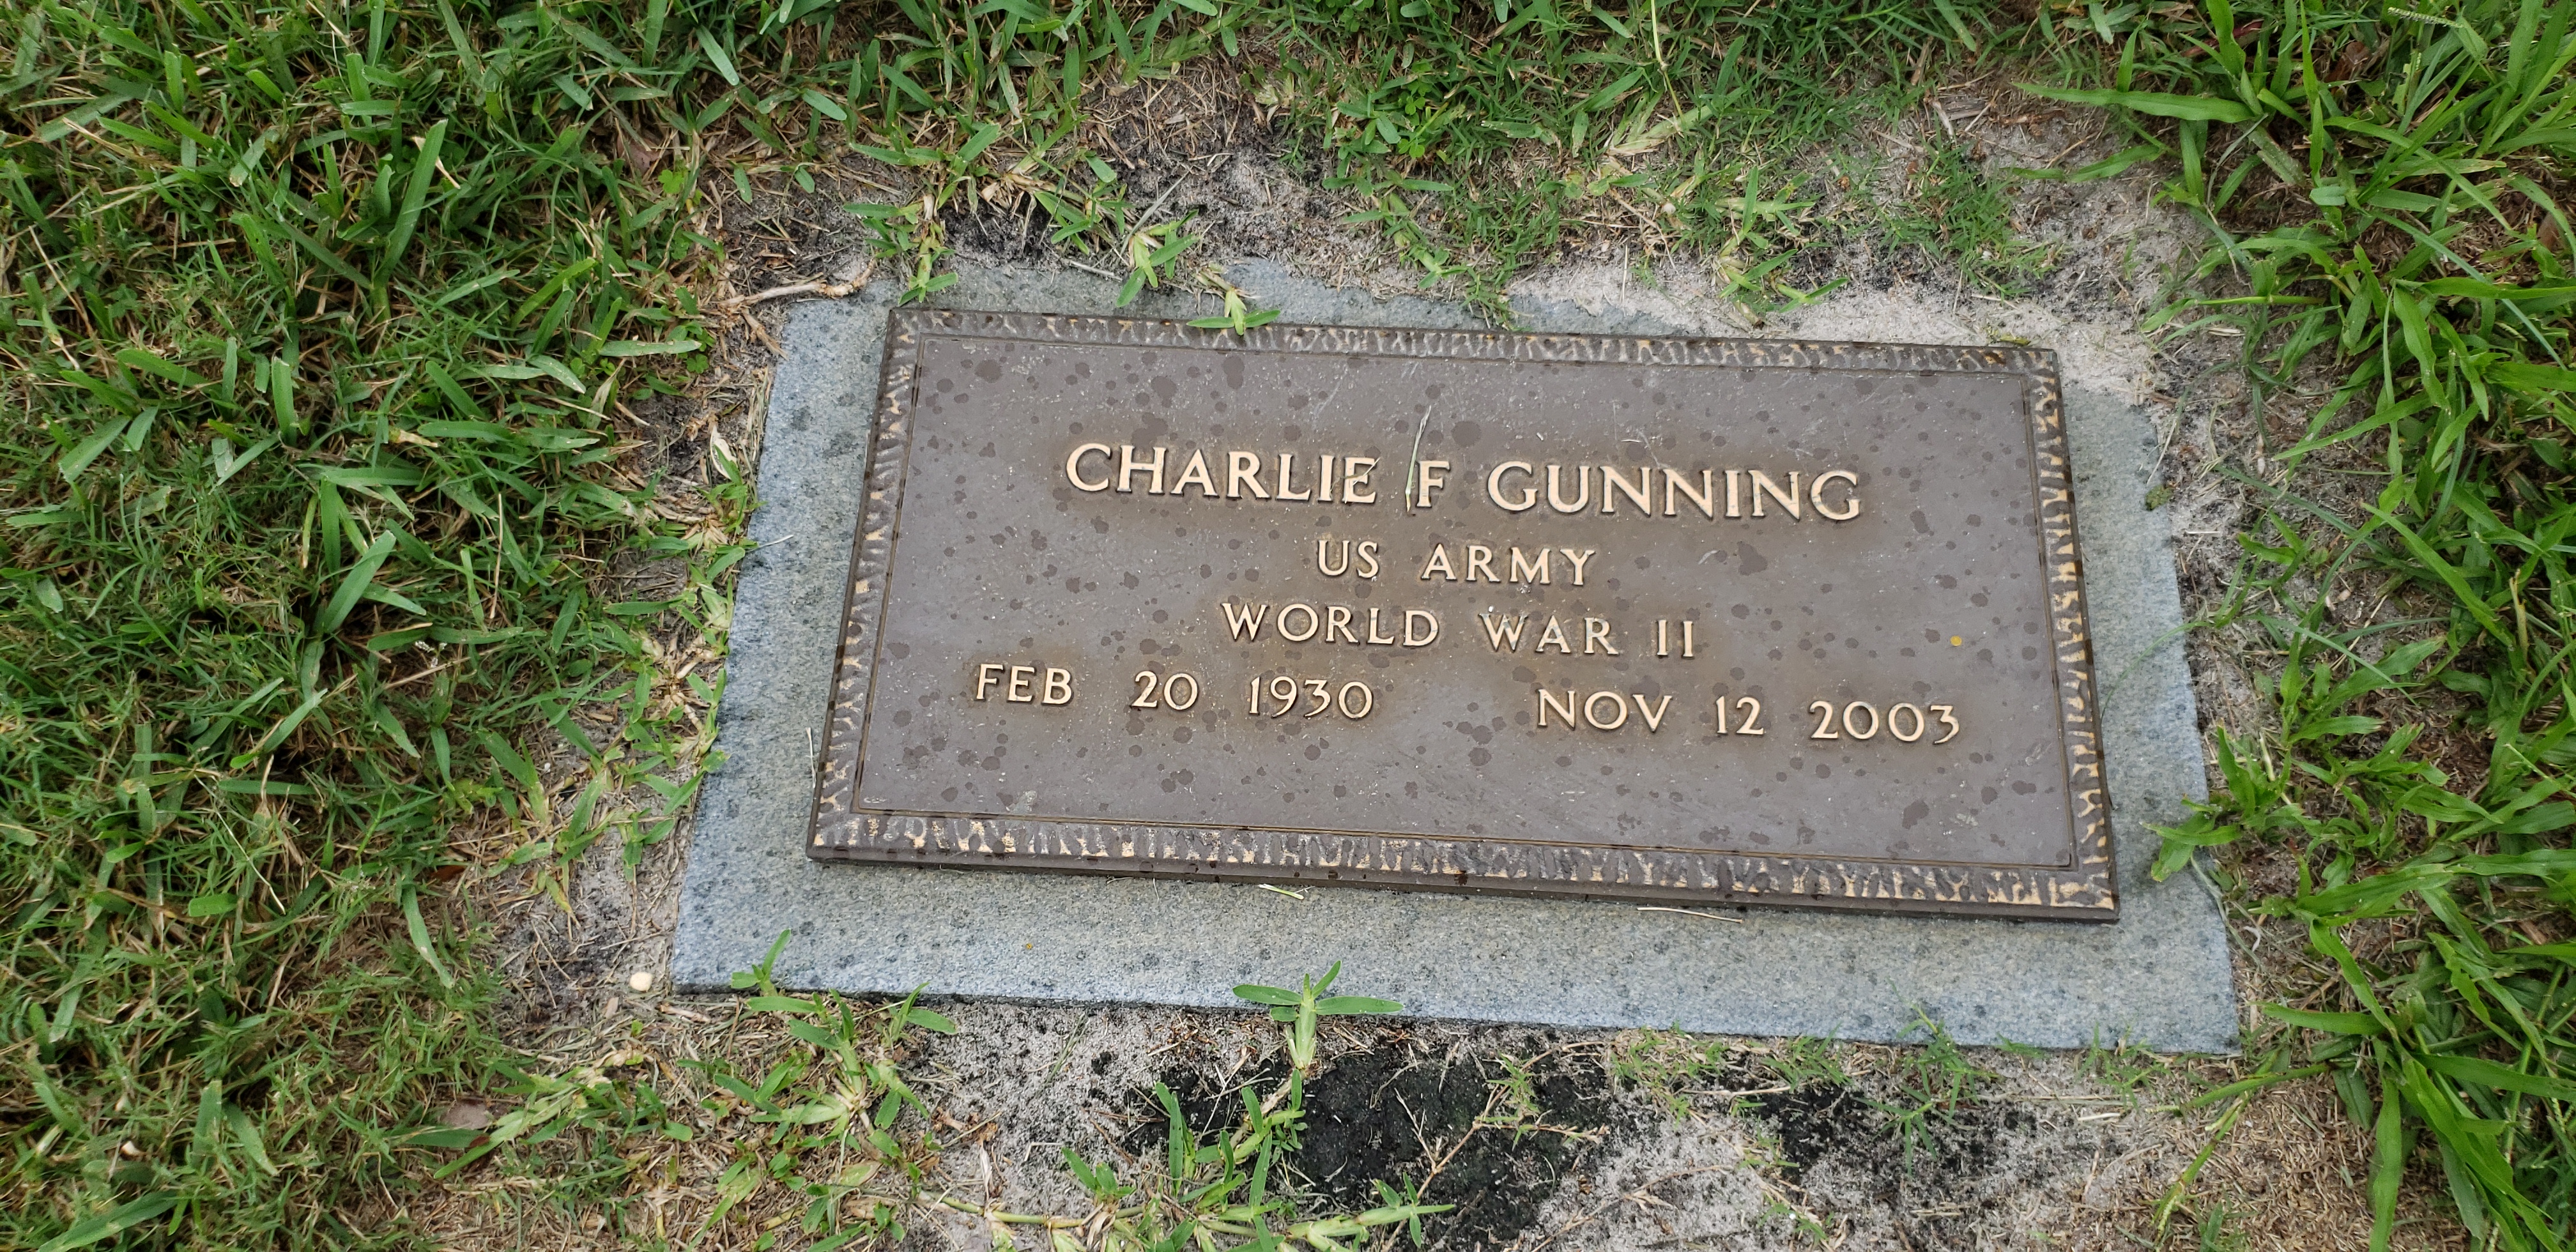 Charlie F Gunning